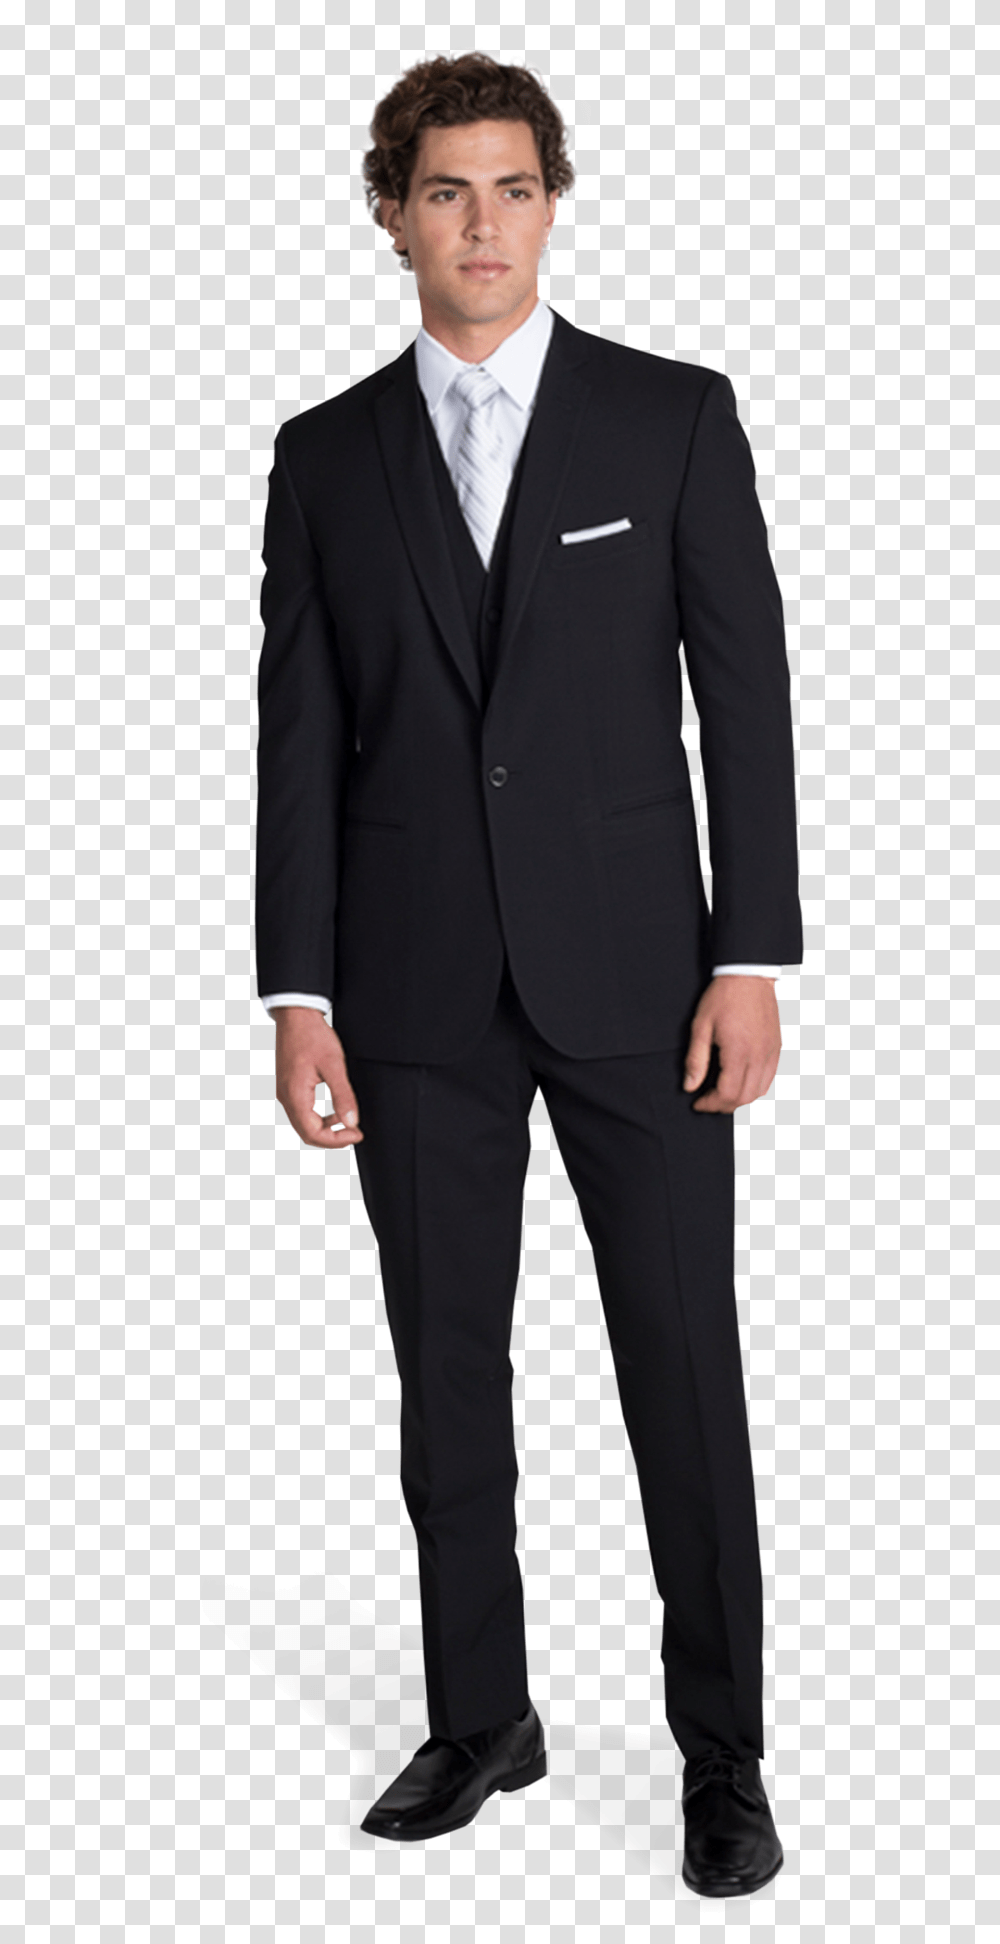 Suitclothingformal Besom Pocket Suit, Overcoat, Tuxedo, Tie, Person Transparent Png